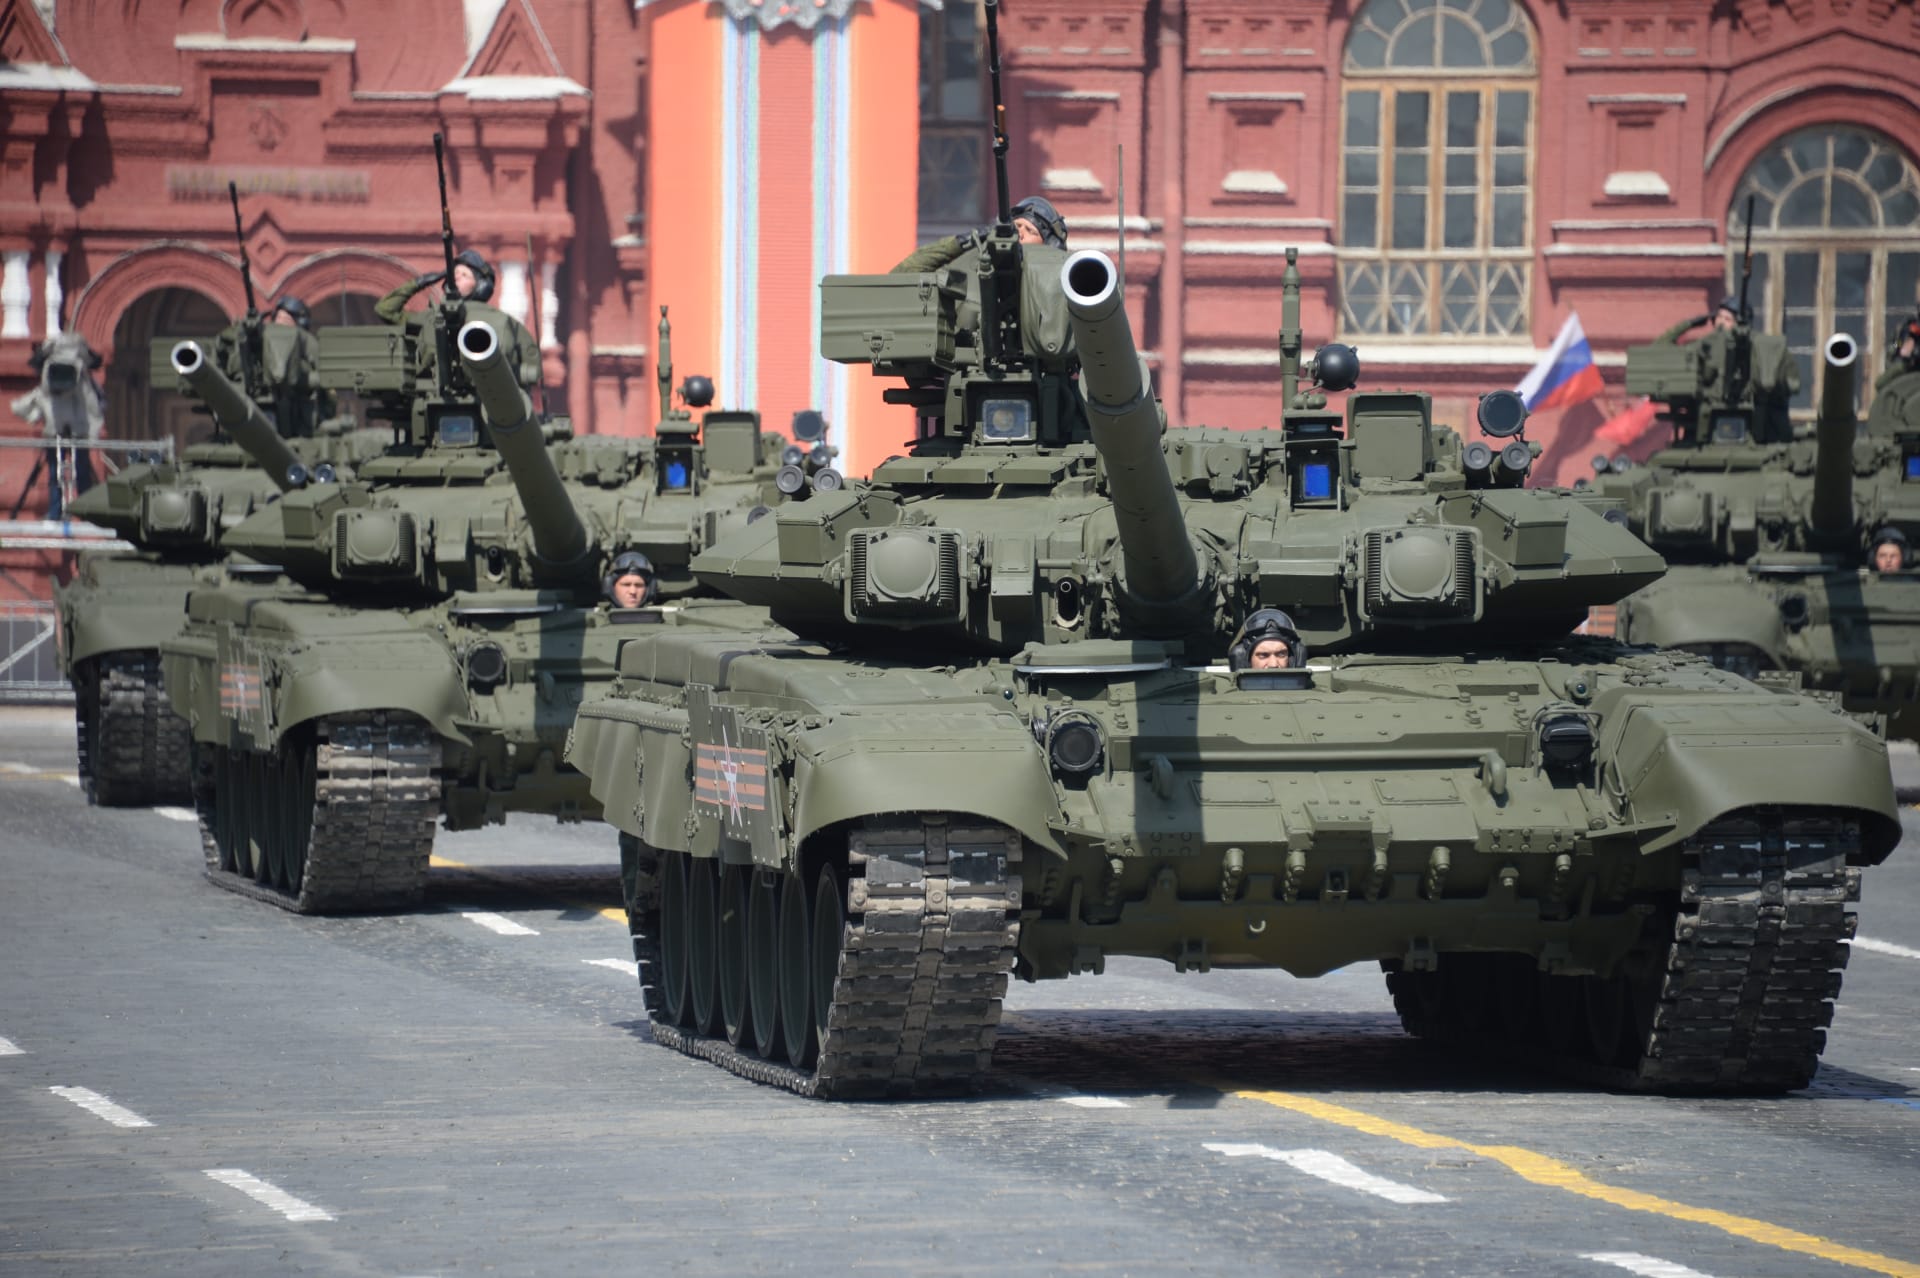  طهران تنوي شراء دبابات T-90 الروسية: سنستفيد من قدرات أي دولة لتحسين قدراتنا